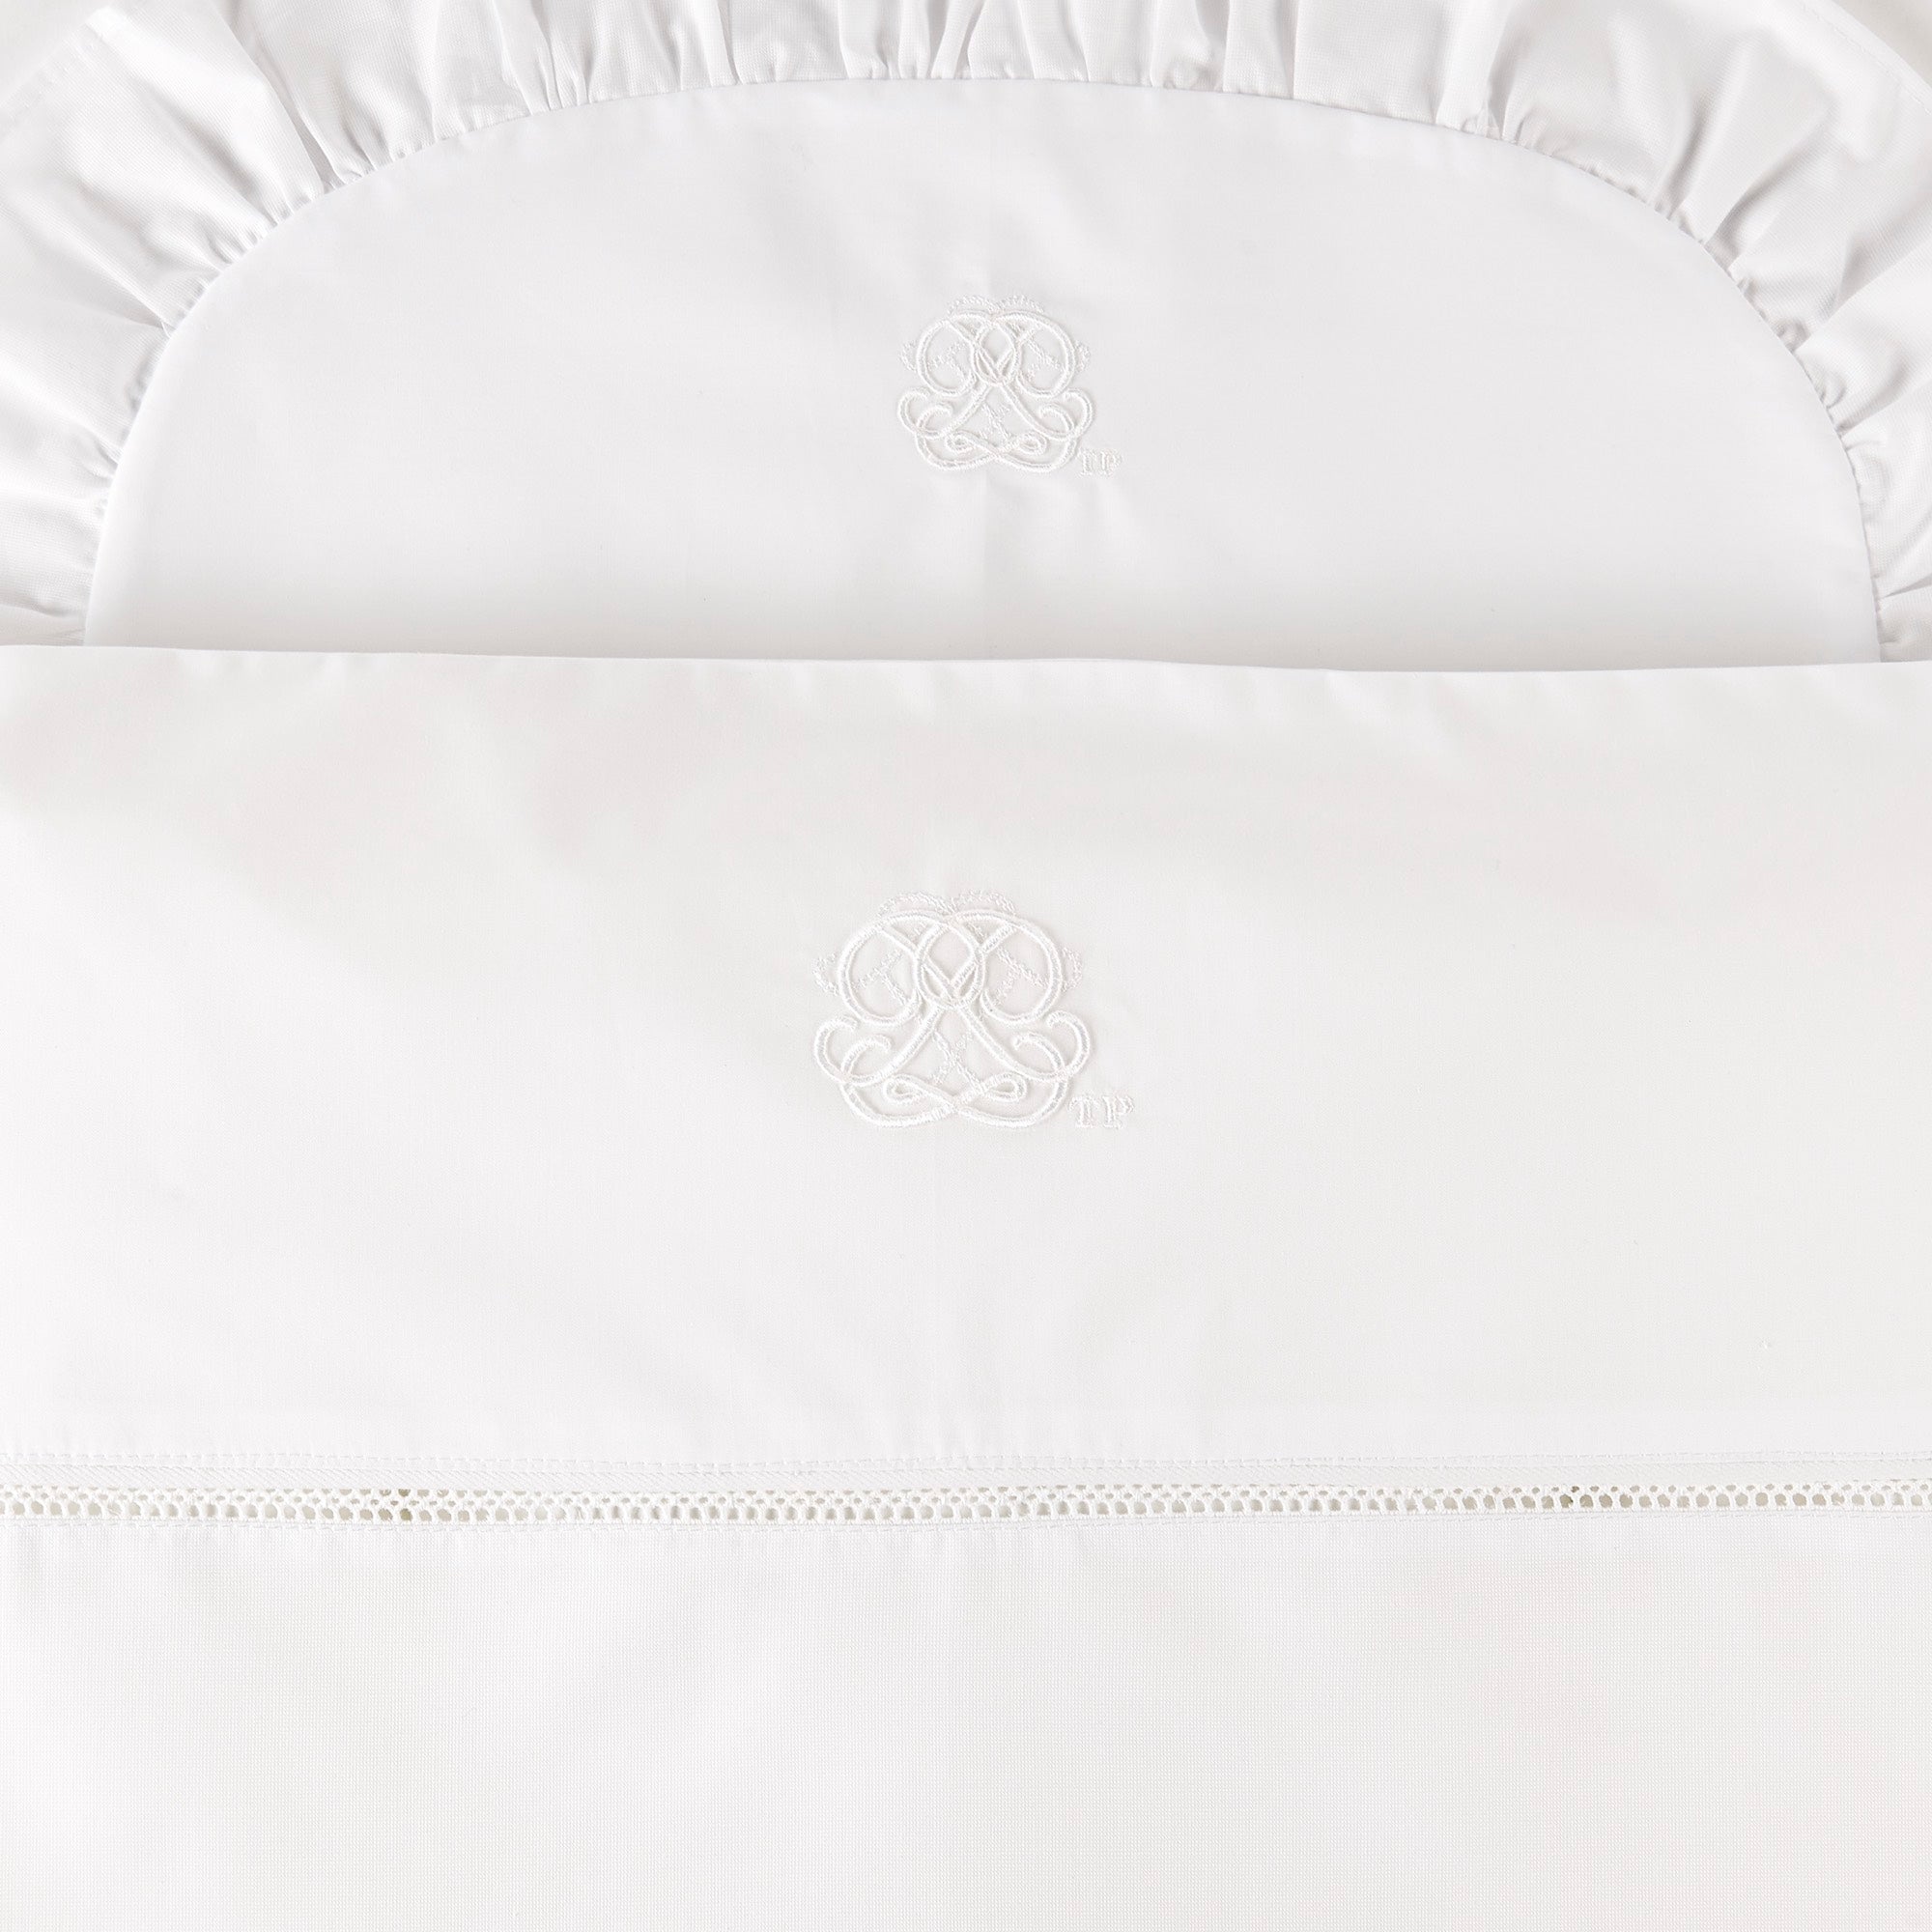 Theophile & Patachou Cot Duvet Cover - Cotton White